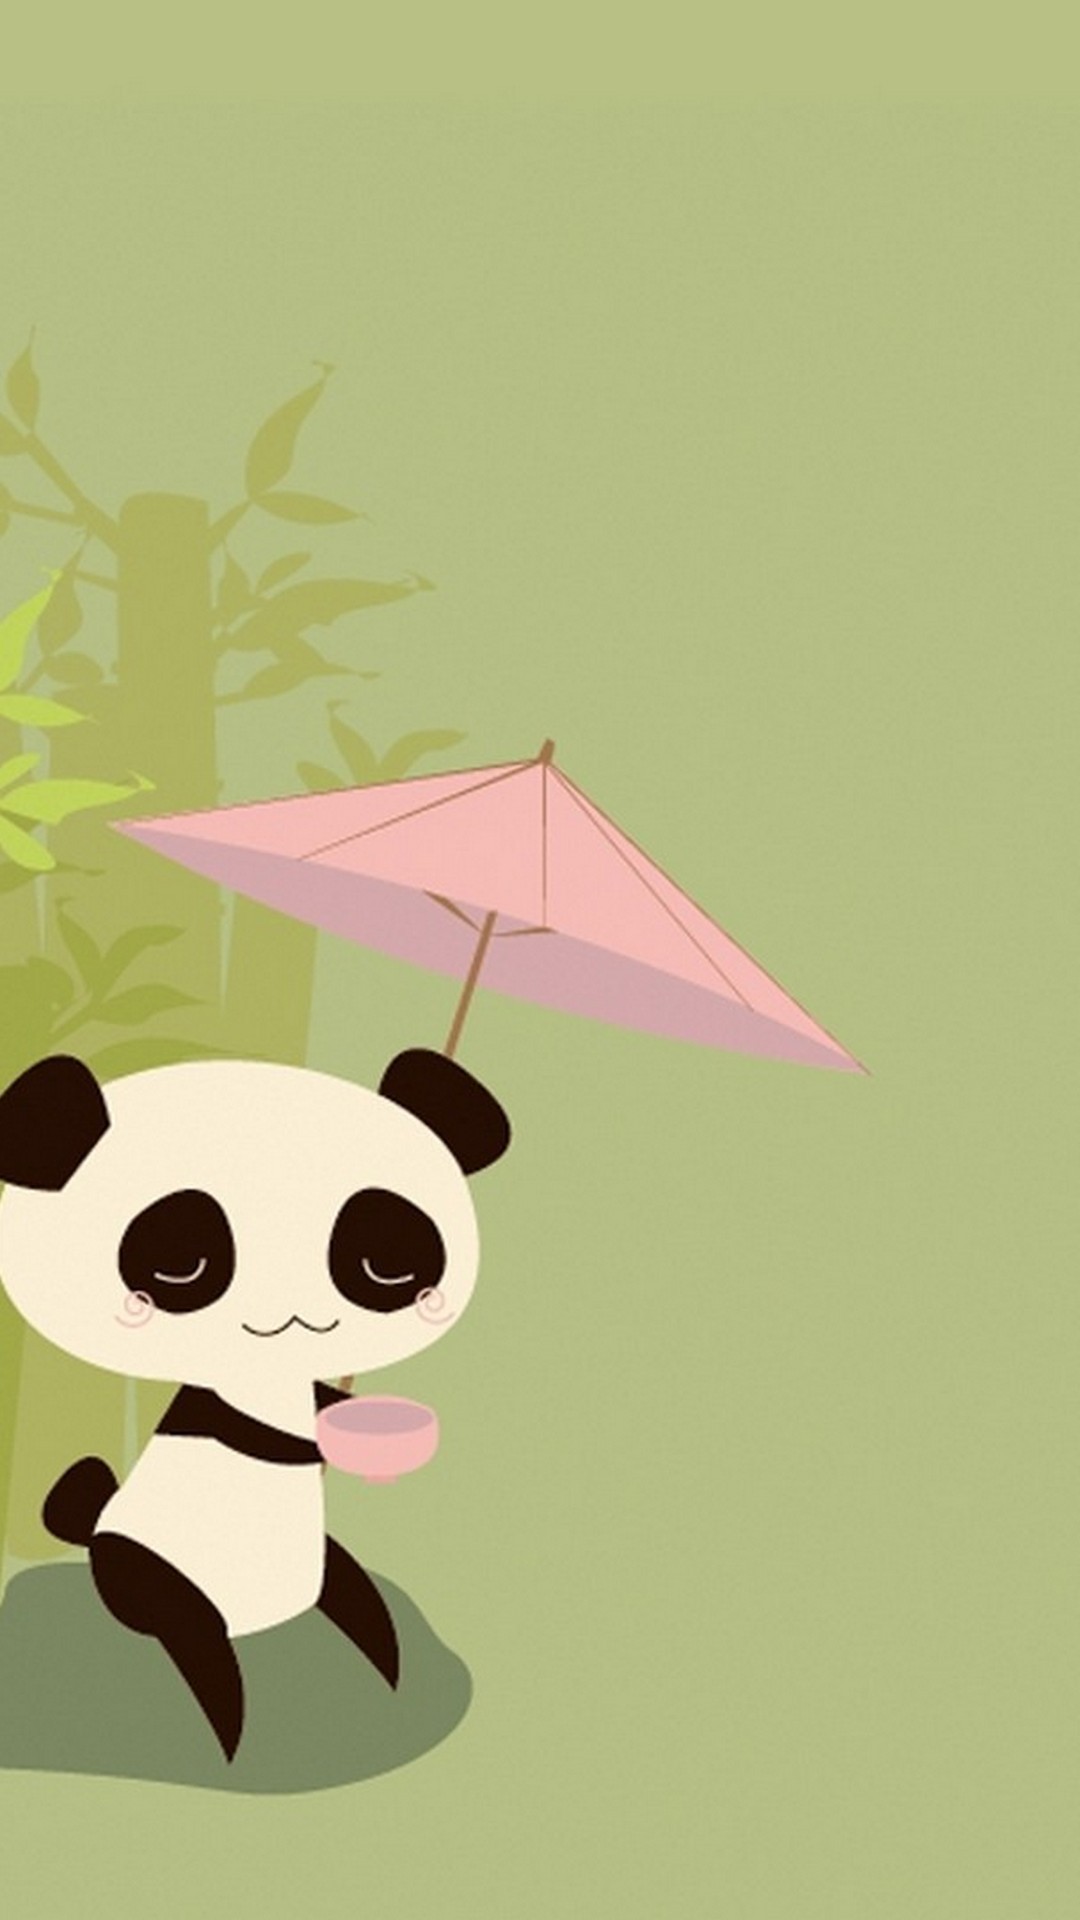 fond d'écran panda,dessin animé,illustration,parapluie,art,cerf volant